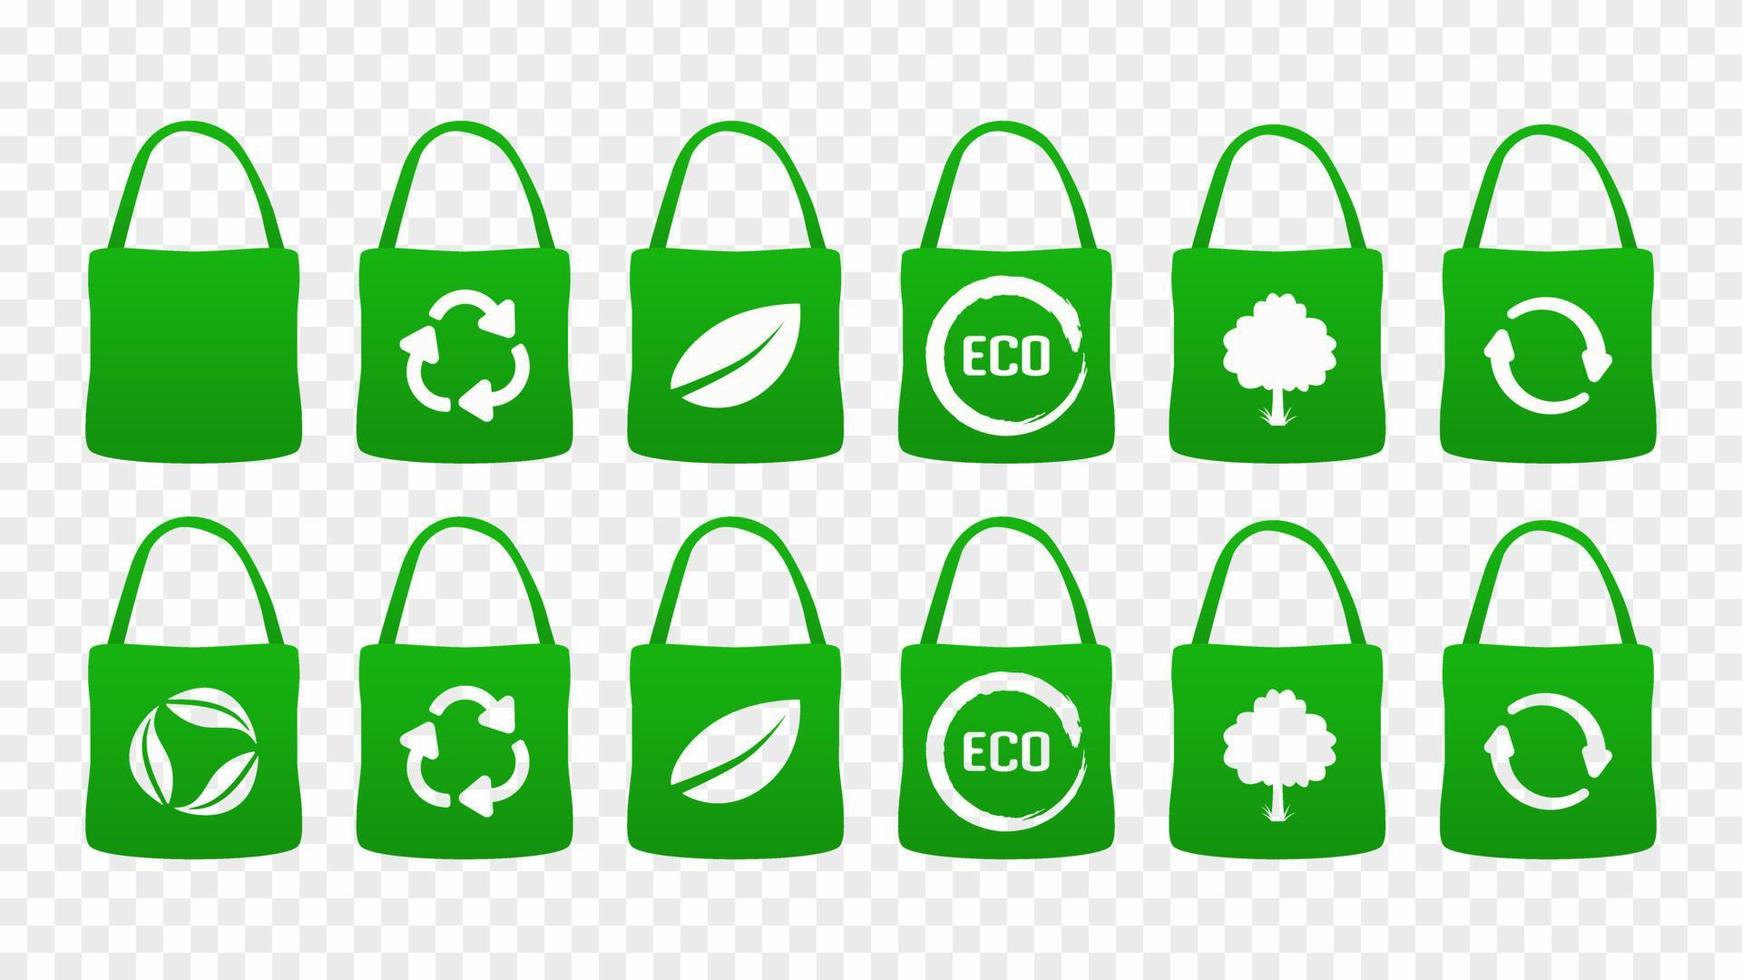 ekologiska påsar. grönt naturligt lövpaket tillverkat av naturliga bioråvaror med ruttnande plast återanvändbar cykelanvändning utan miljöföroreningar bekväma shoppingresor ekologivektor vektor